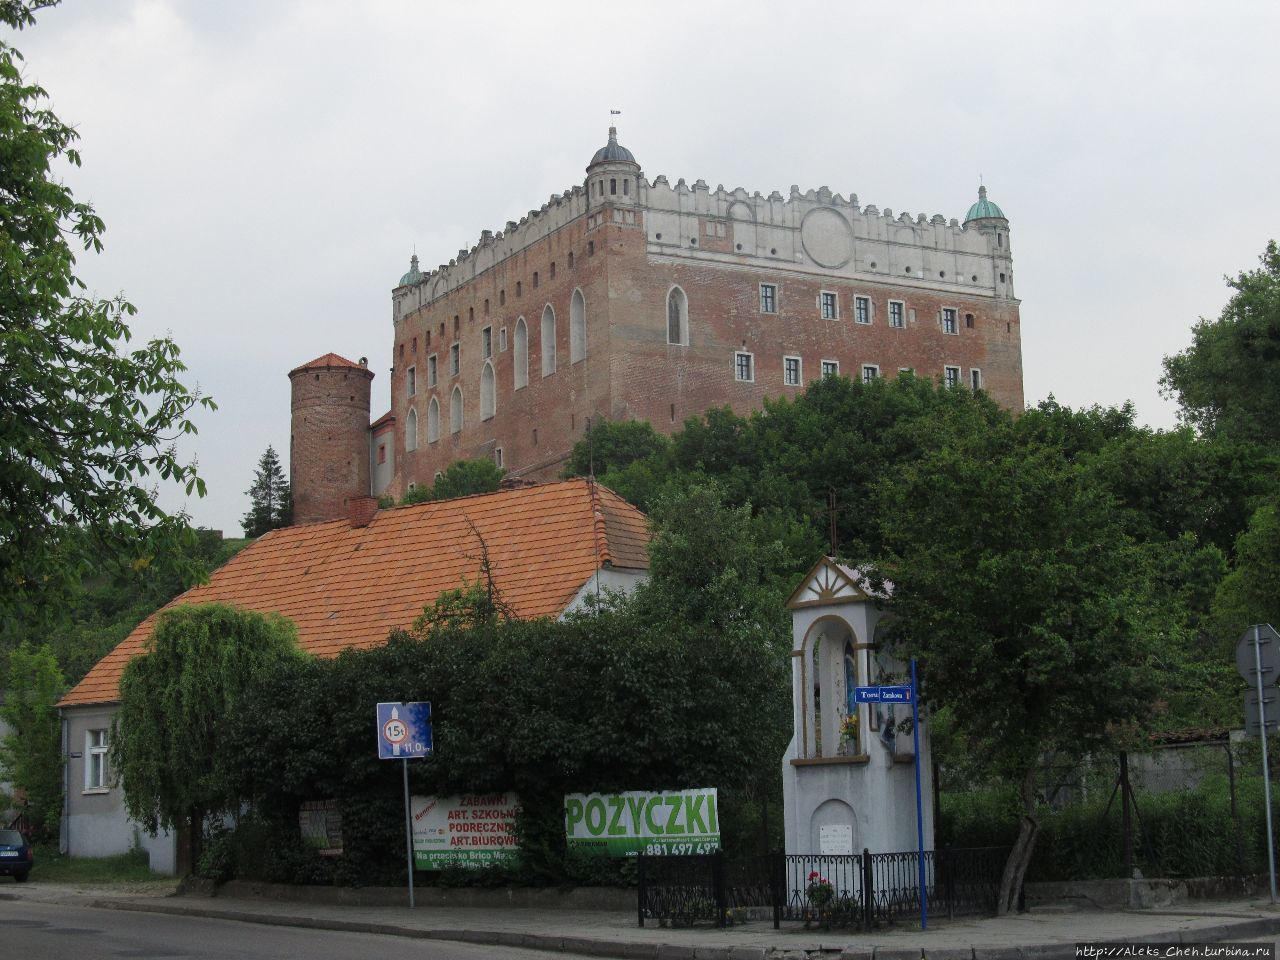 Вид с города на Замок Голюб-Добжинь, Польша